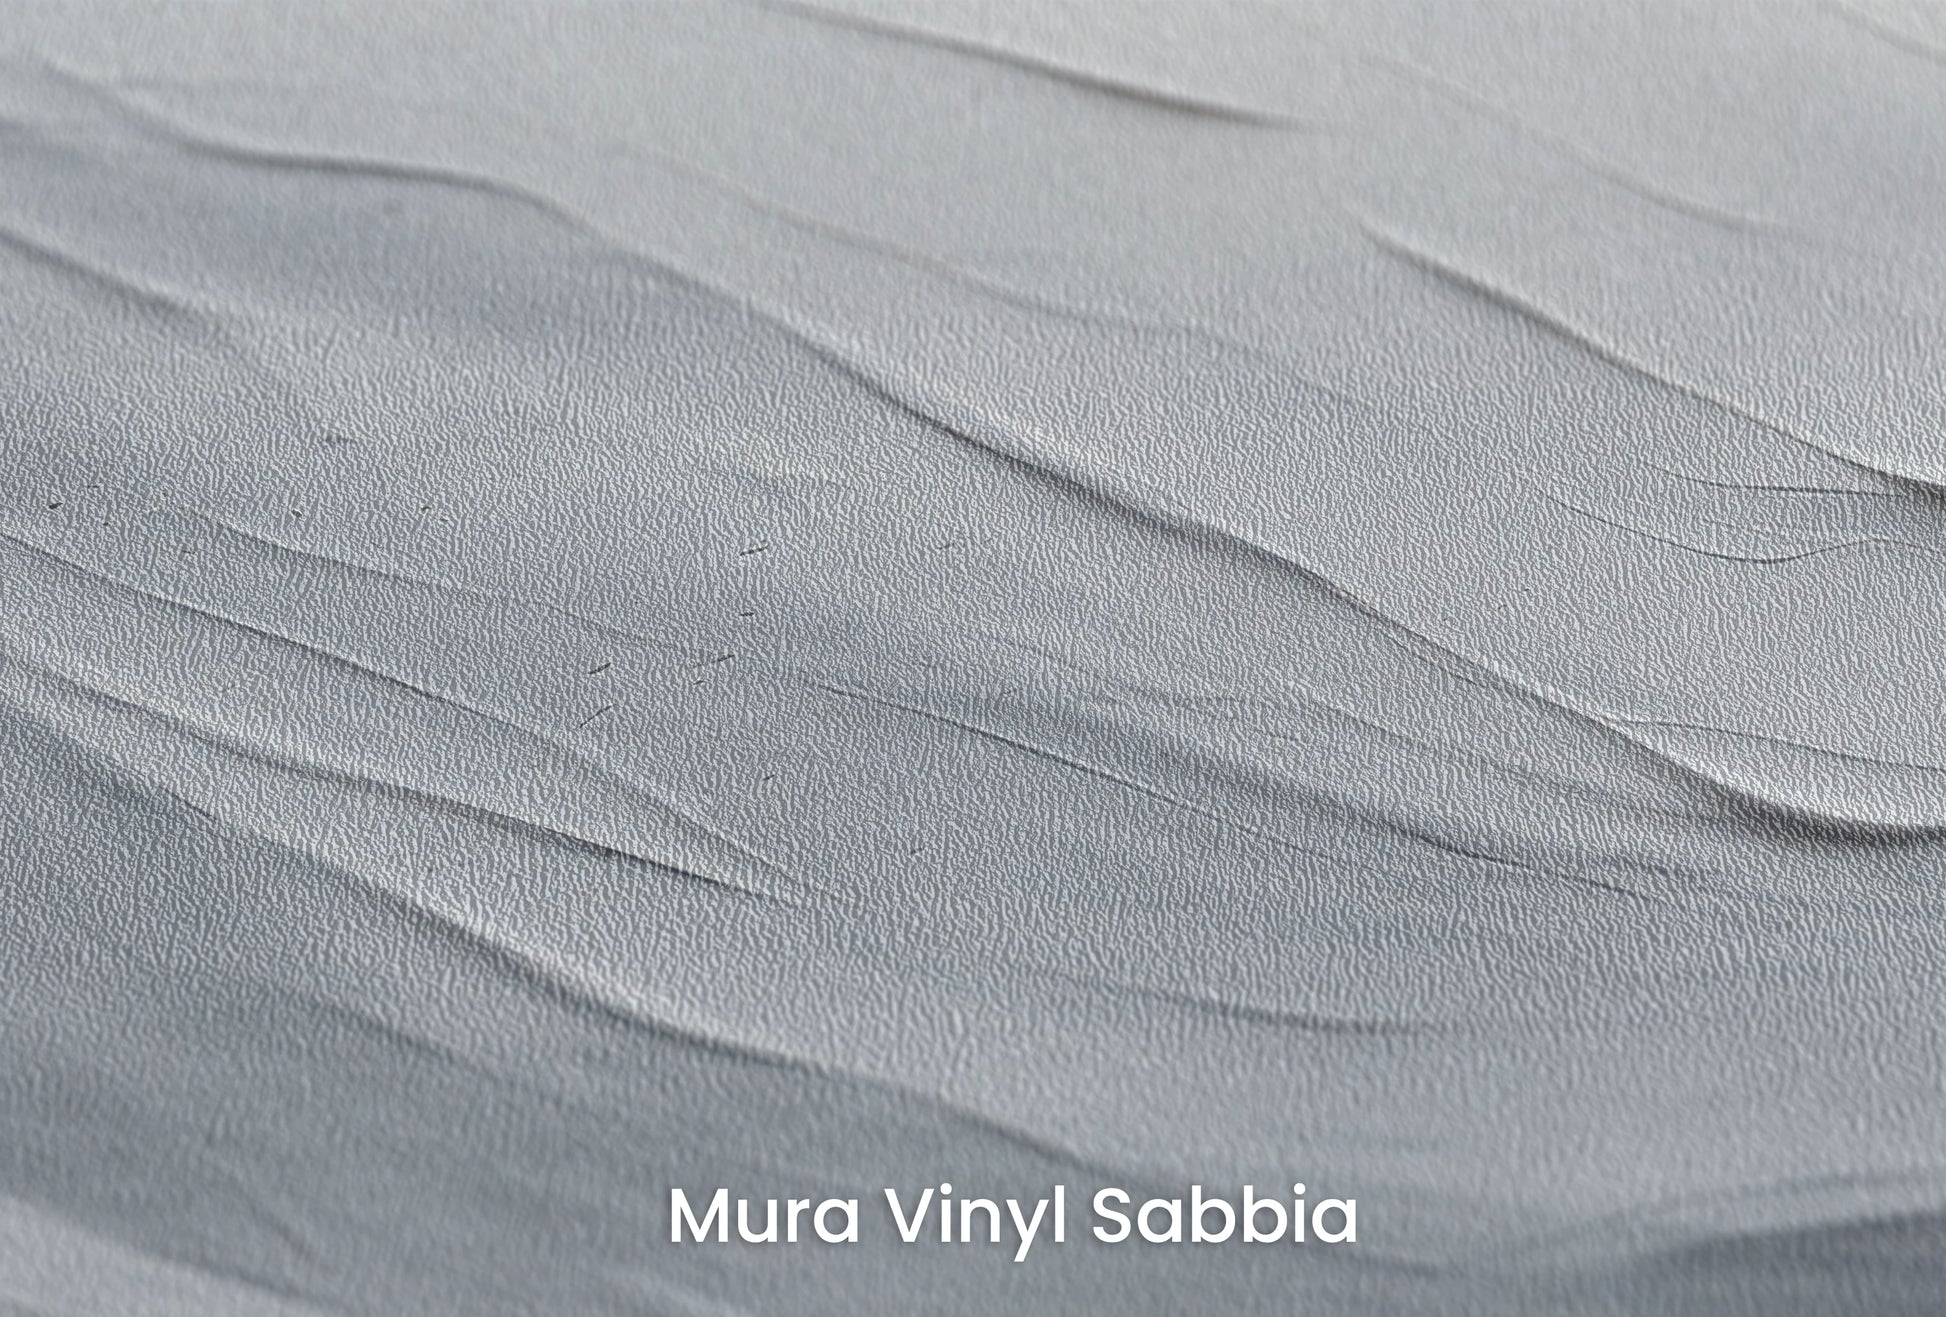 Zbliżenie na artystyczną fototapetę o nazwie Serenity Stratum na podłożu Mura Vinyl Sabbia struktura grubego ziarna piasku.